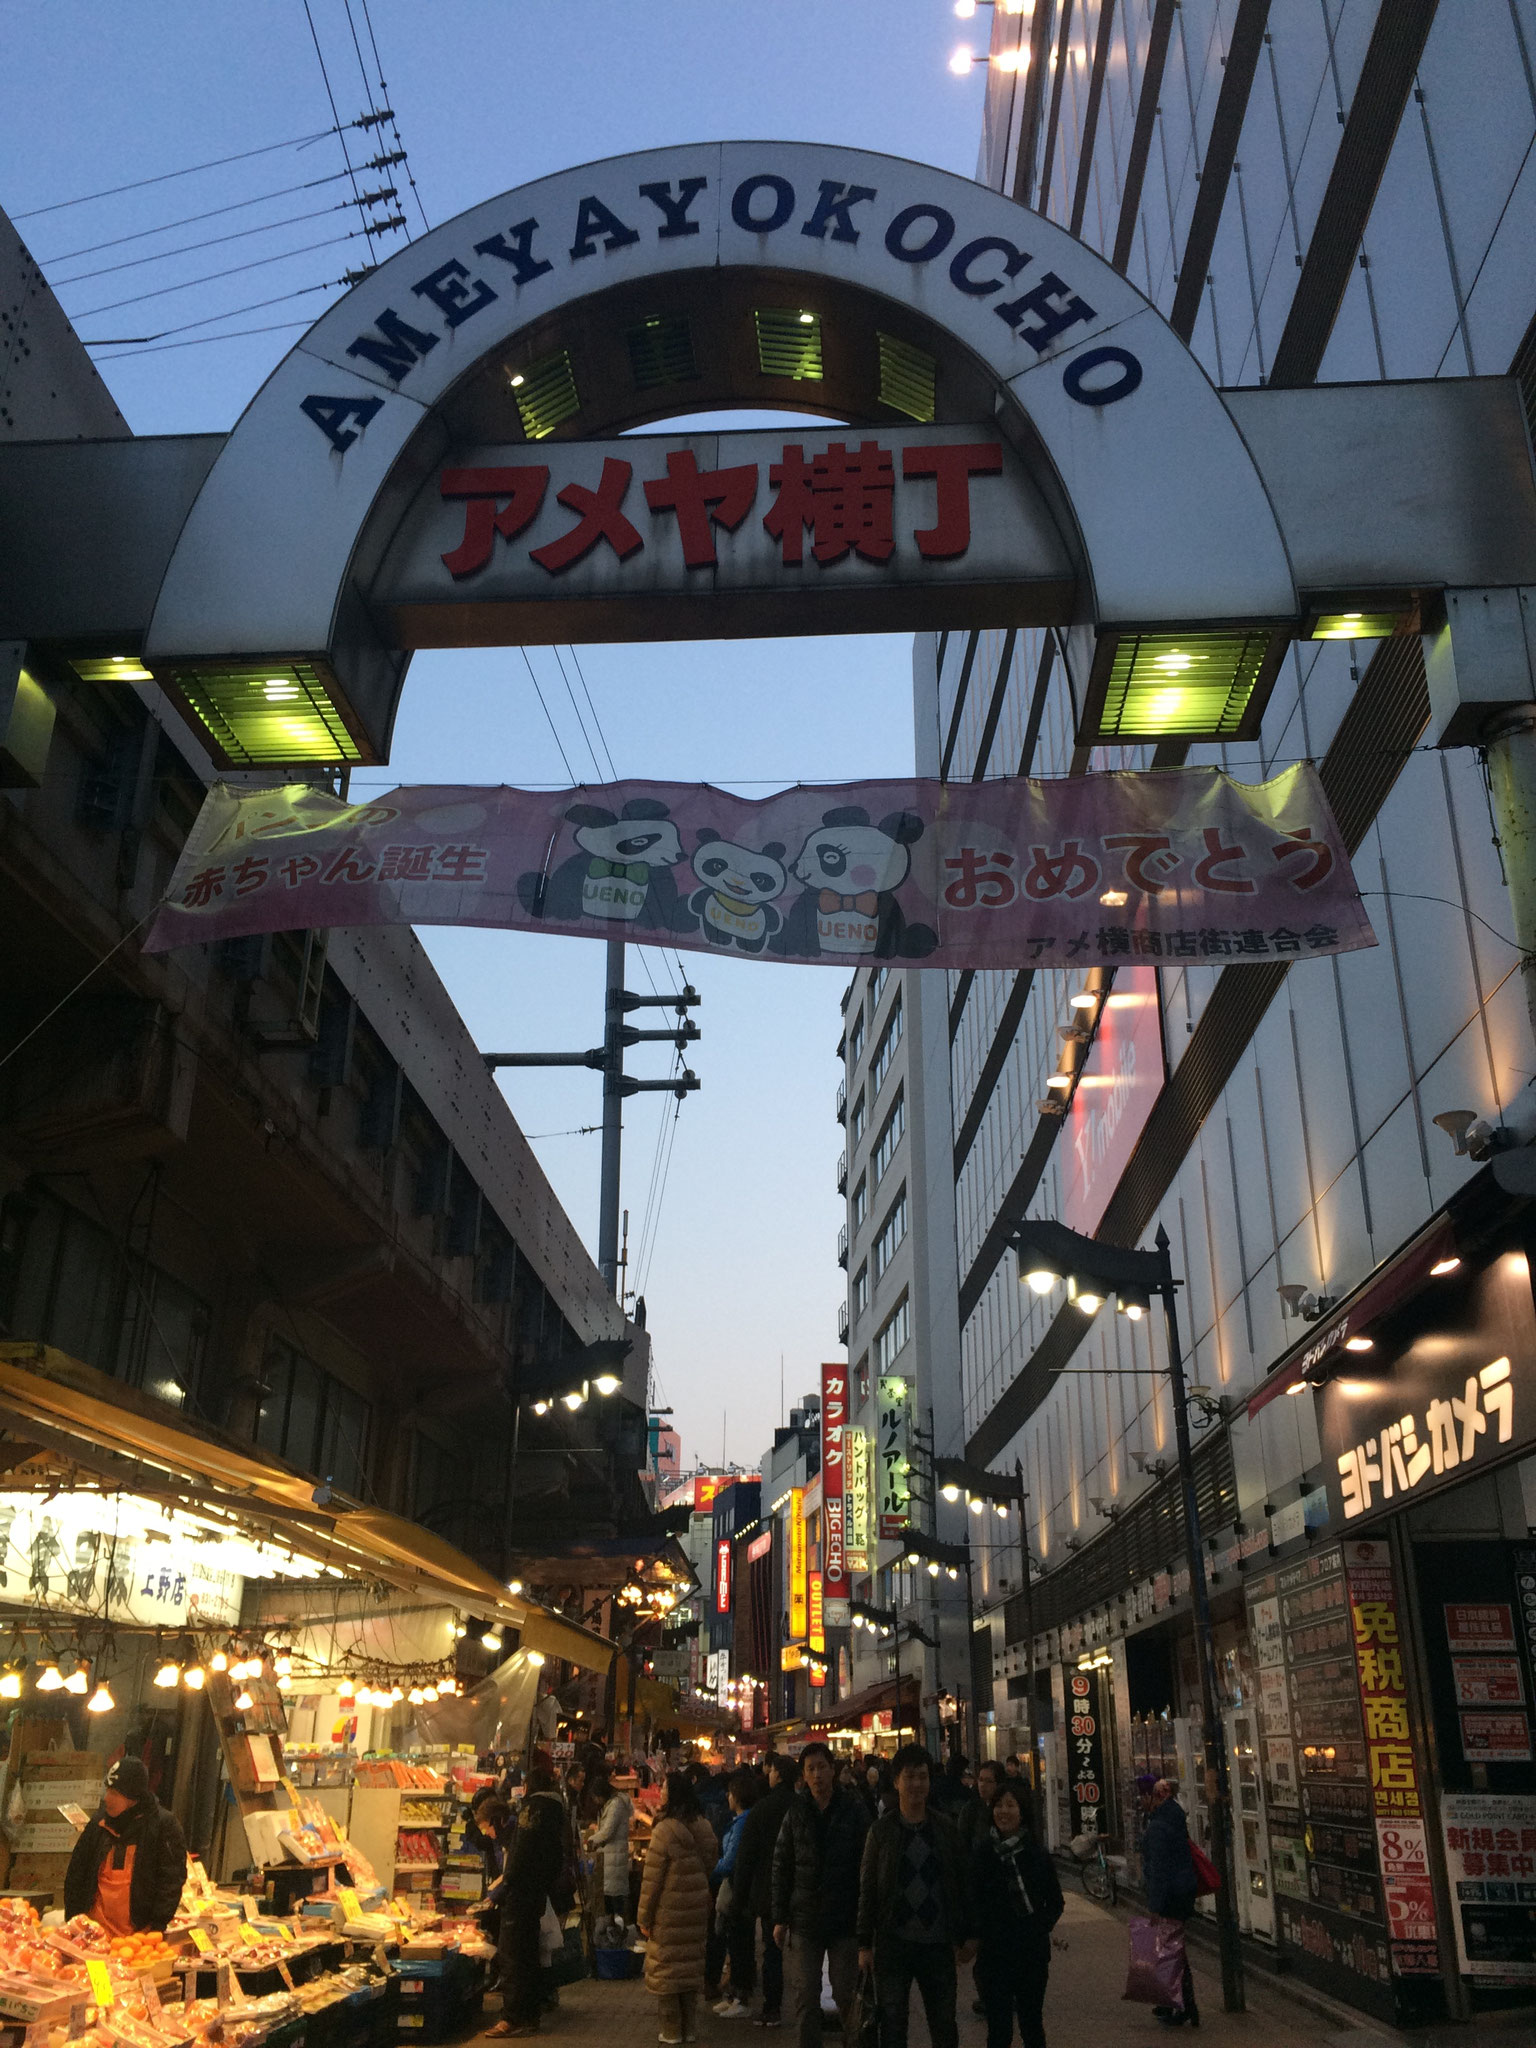 Unsere erste japanische Einkaufsstraße ;)...